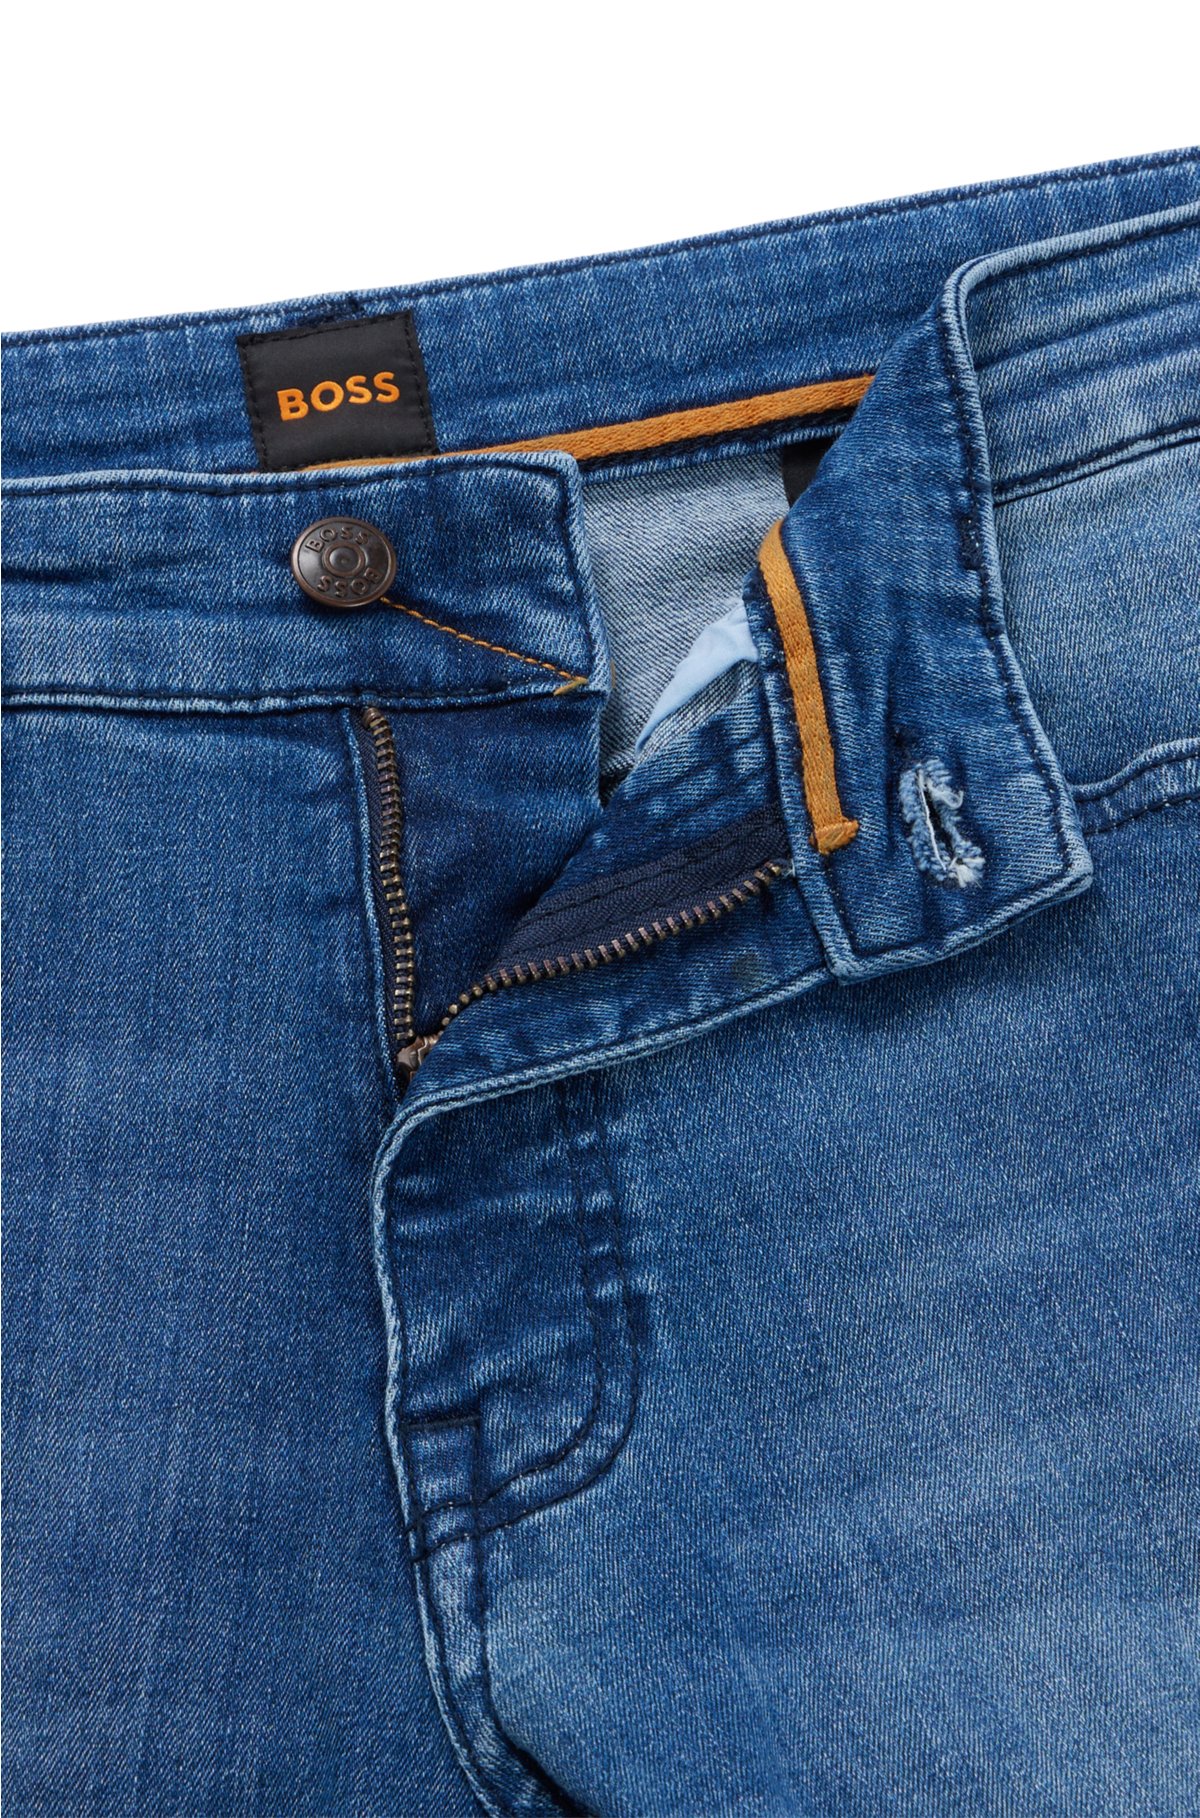 døråbning Afslag Bemærk venligst BOSS - Slim-fit jeans in blue super-stretch denim